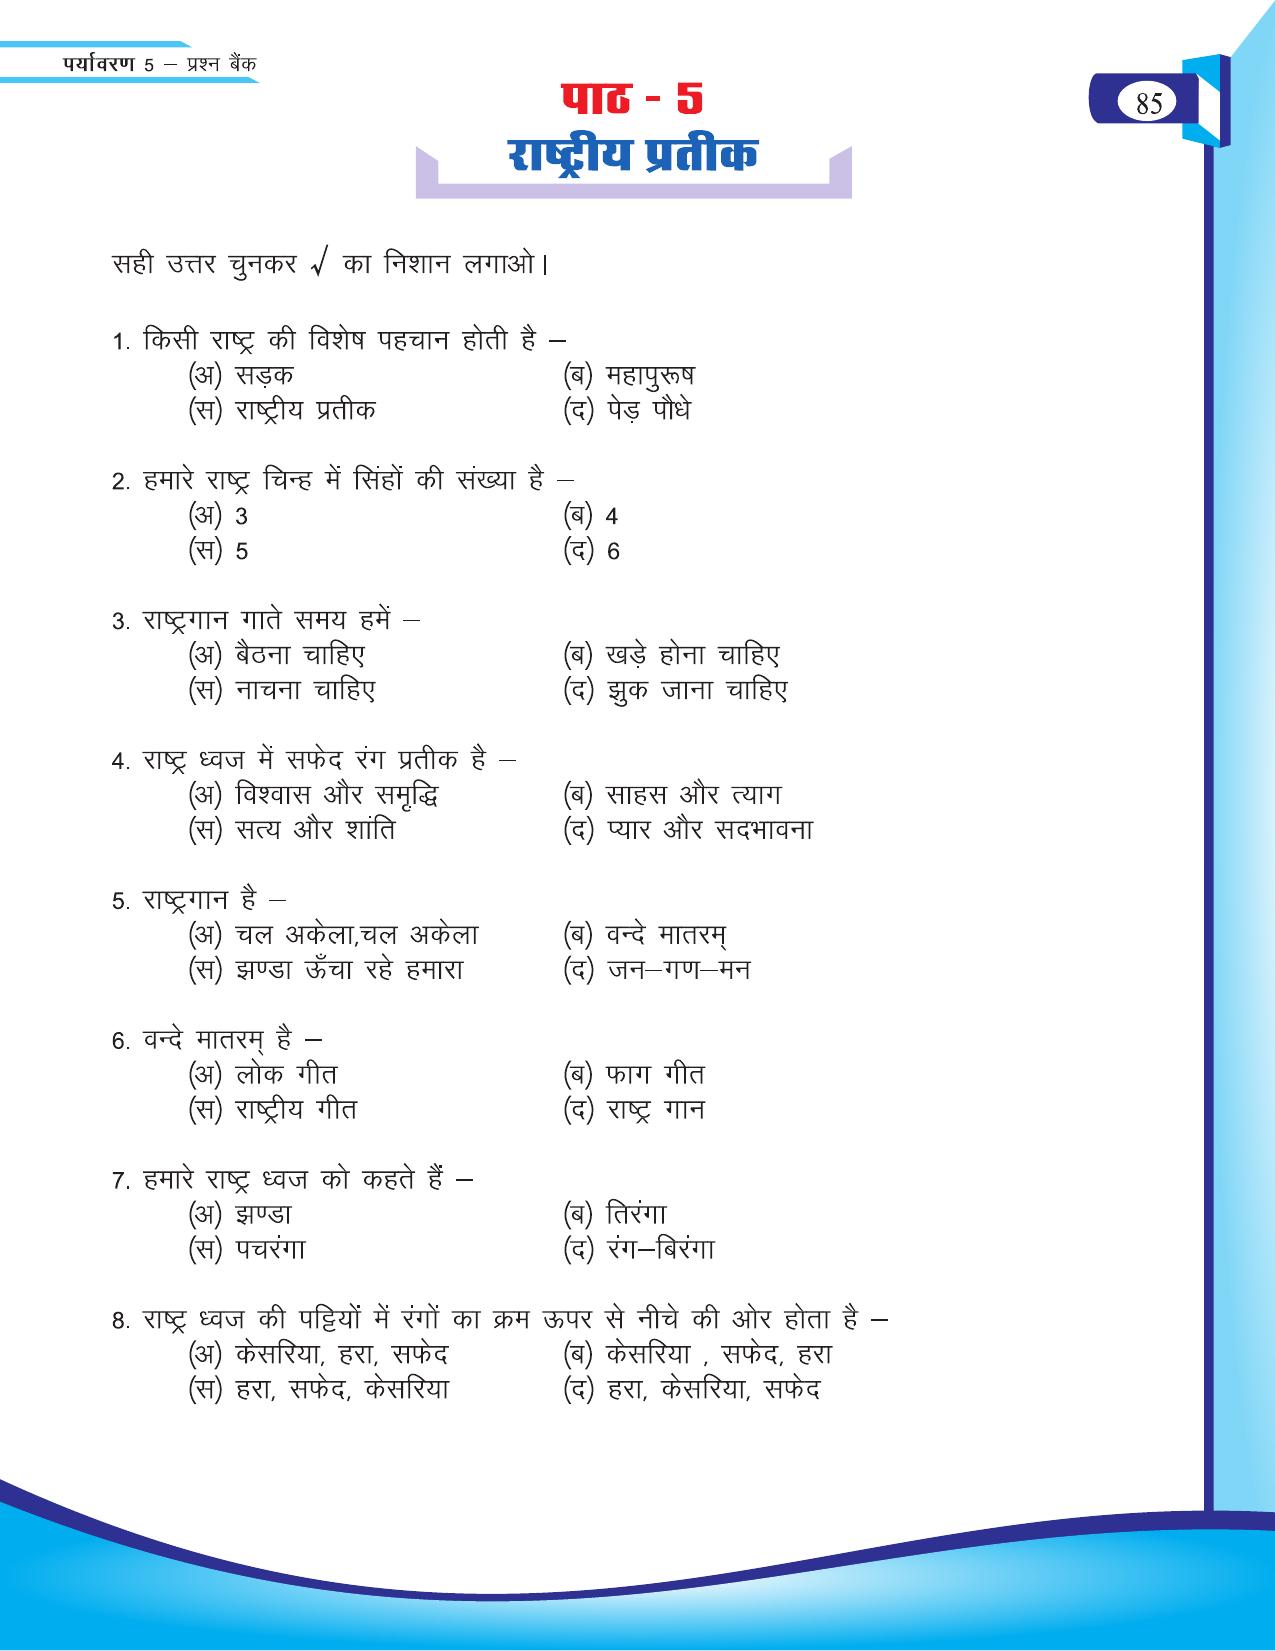 Chhattisgarh Board Class 5 EVS Question Bank 2015-16 - Page 11